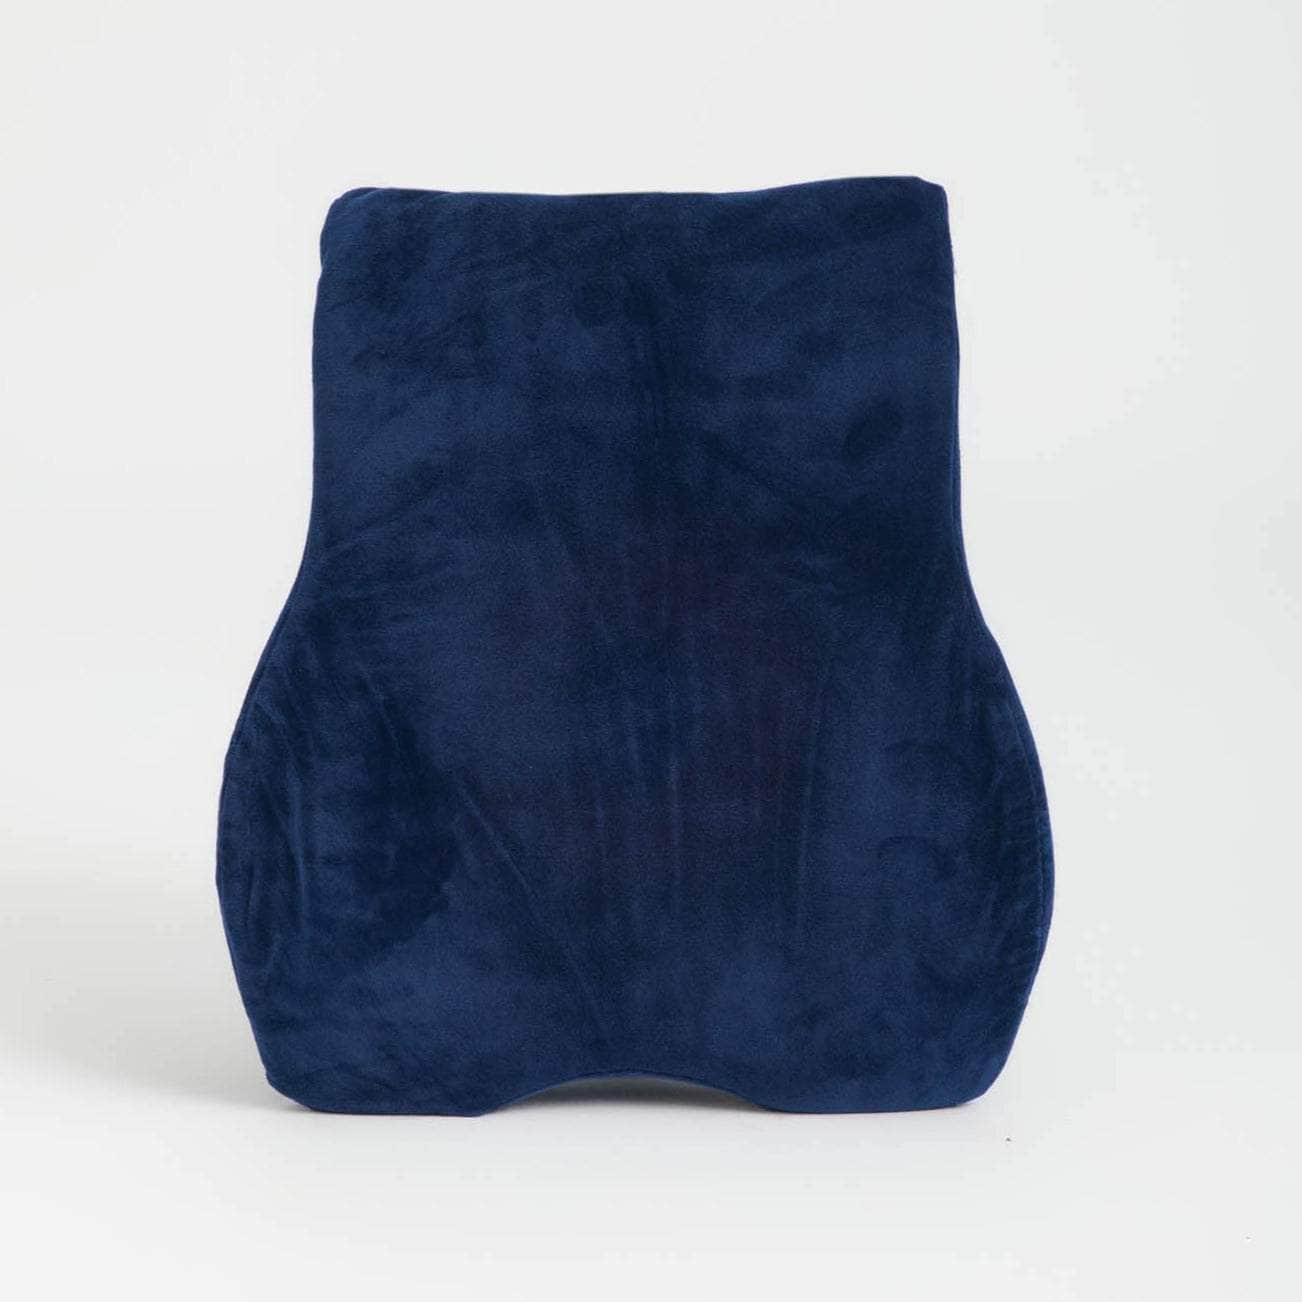 Penguin Group Cushions Lumbar Comfort Cushion